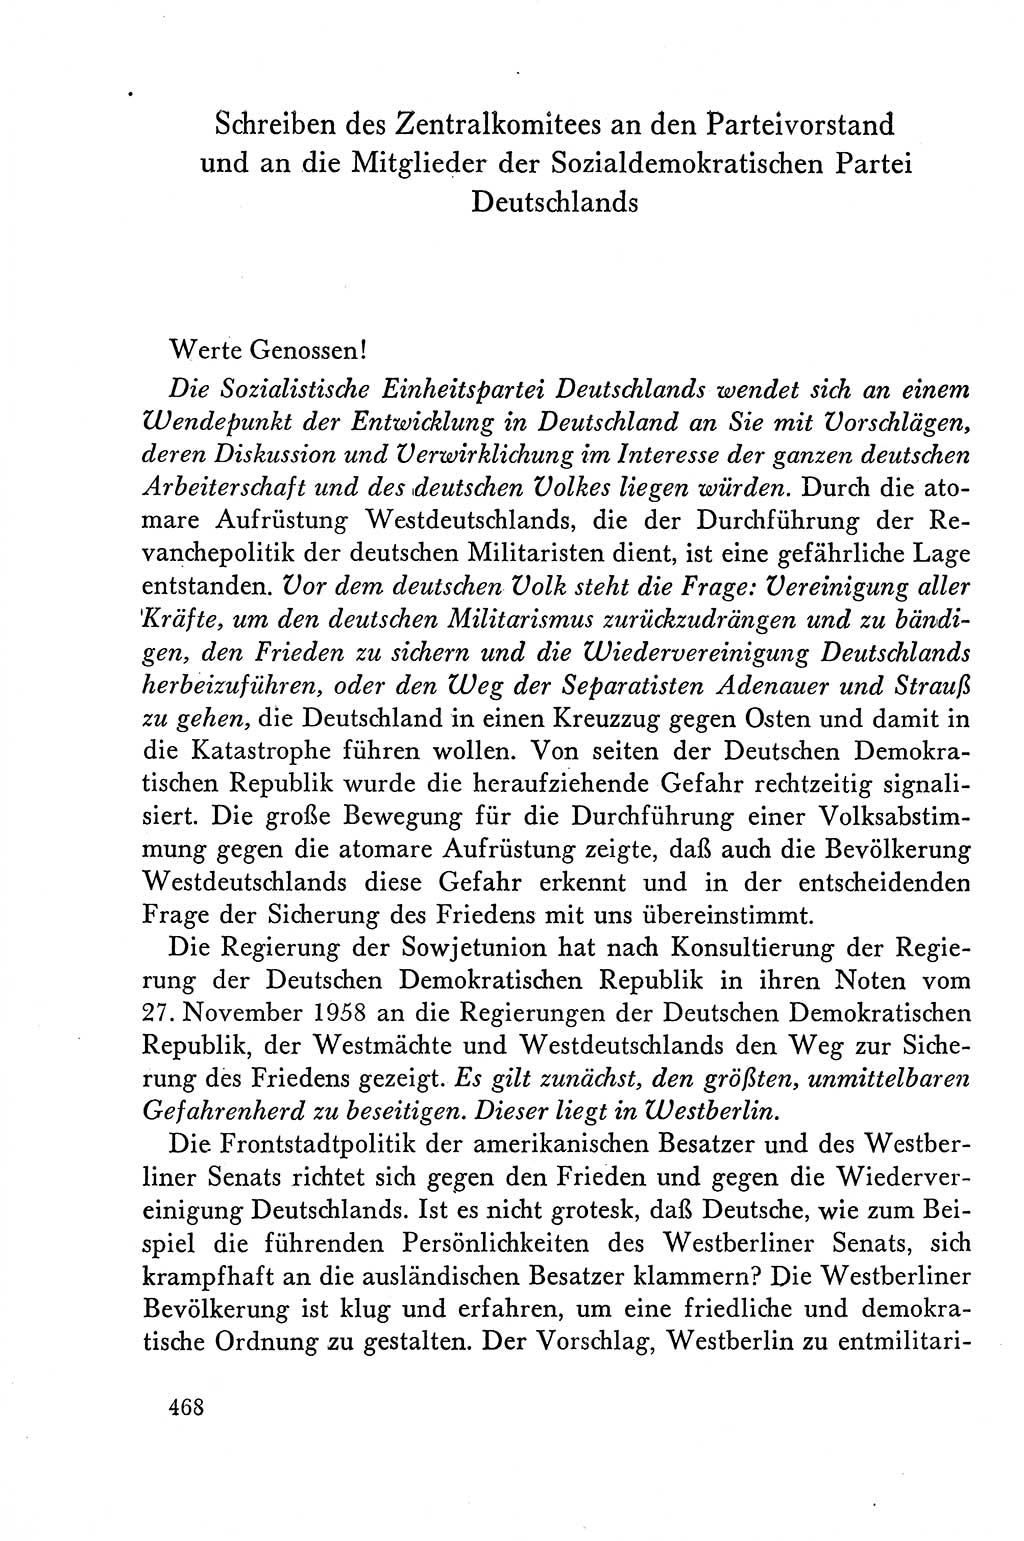 Dokumente der Sozialistischen Einheitspartei Deutschlands (SED) [Deutsche Demokratische Republik (DDR)] 1958-1959, Seite 468 (Dok. SED DDR 1958-1959, S. 468)